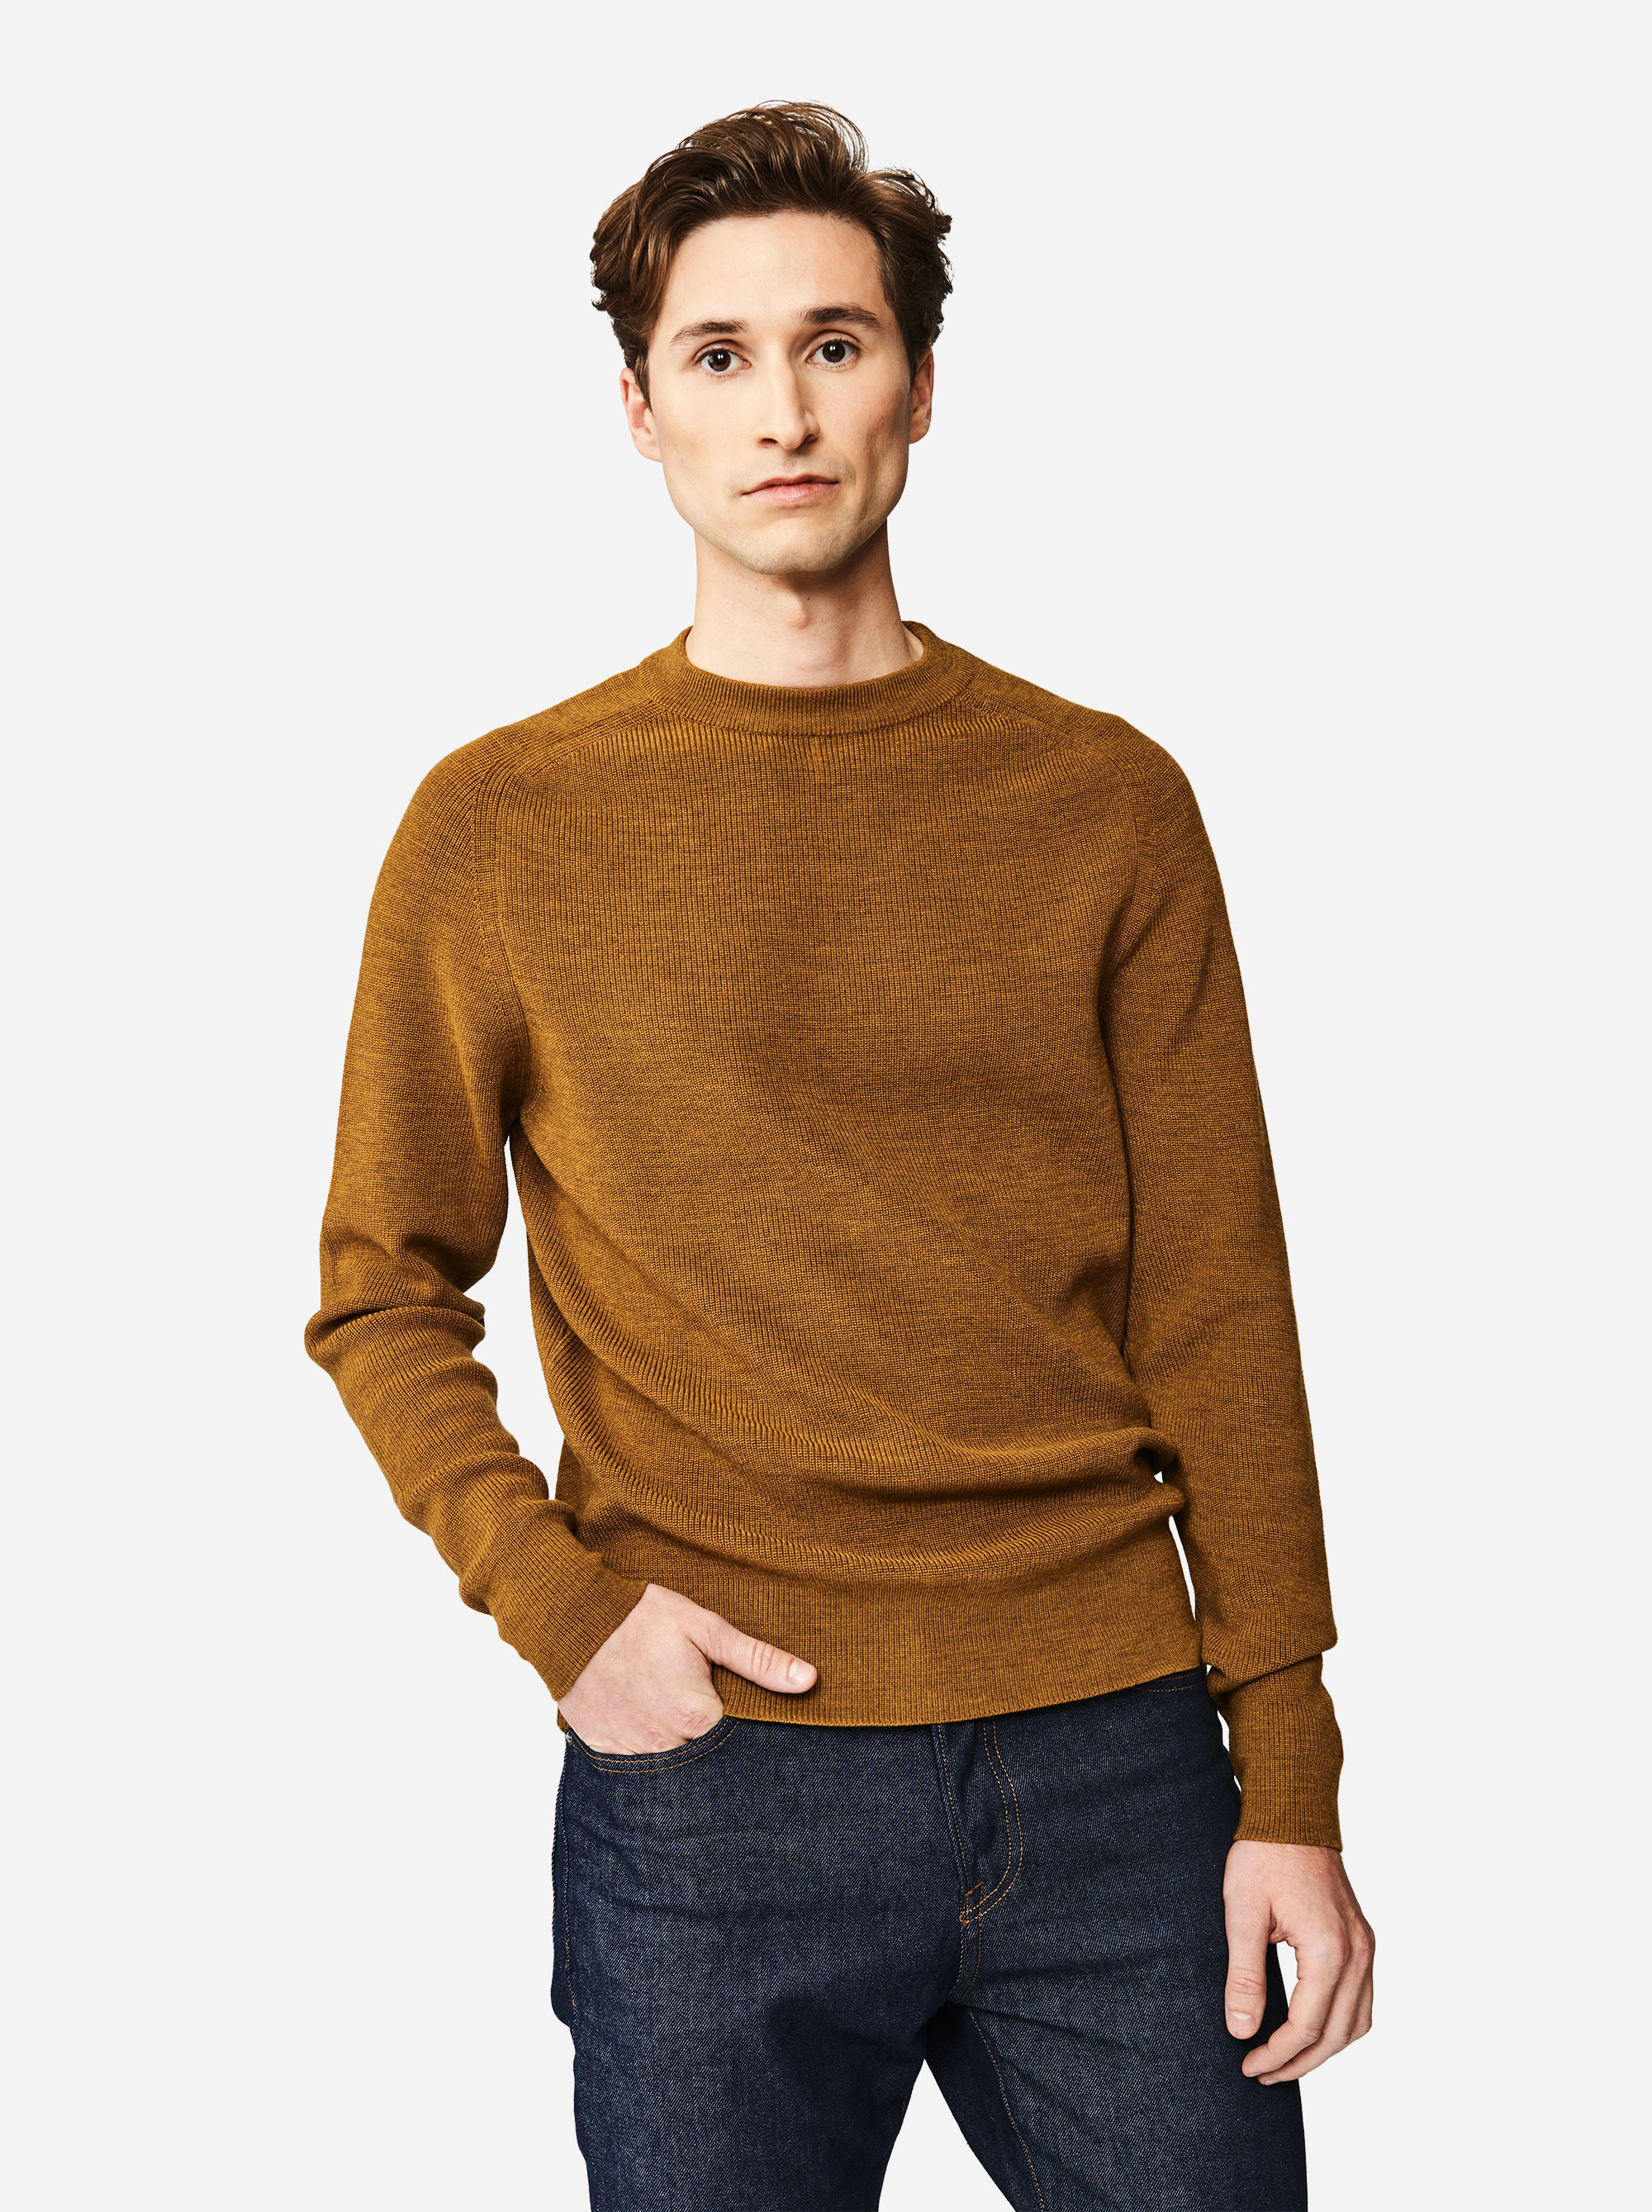 Teym - The Merino Sweater - Men - Mustard - 3